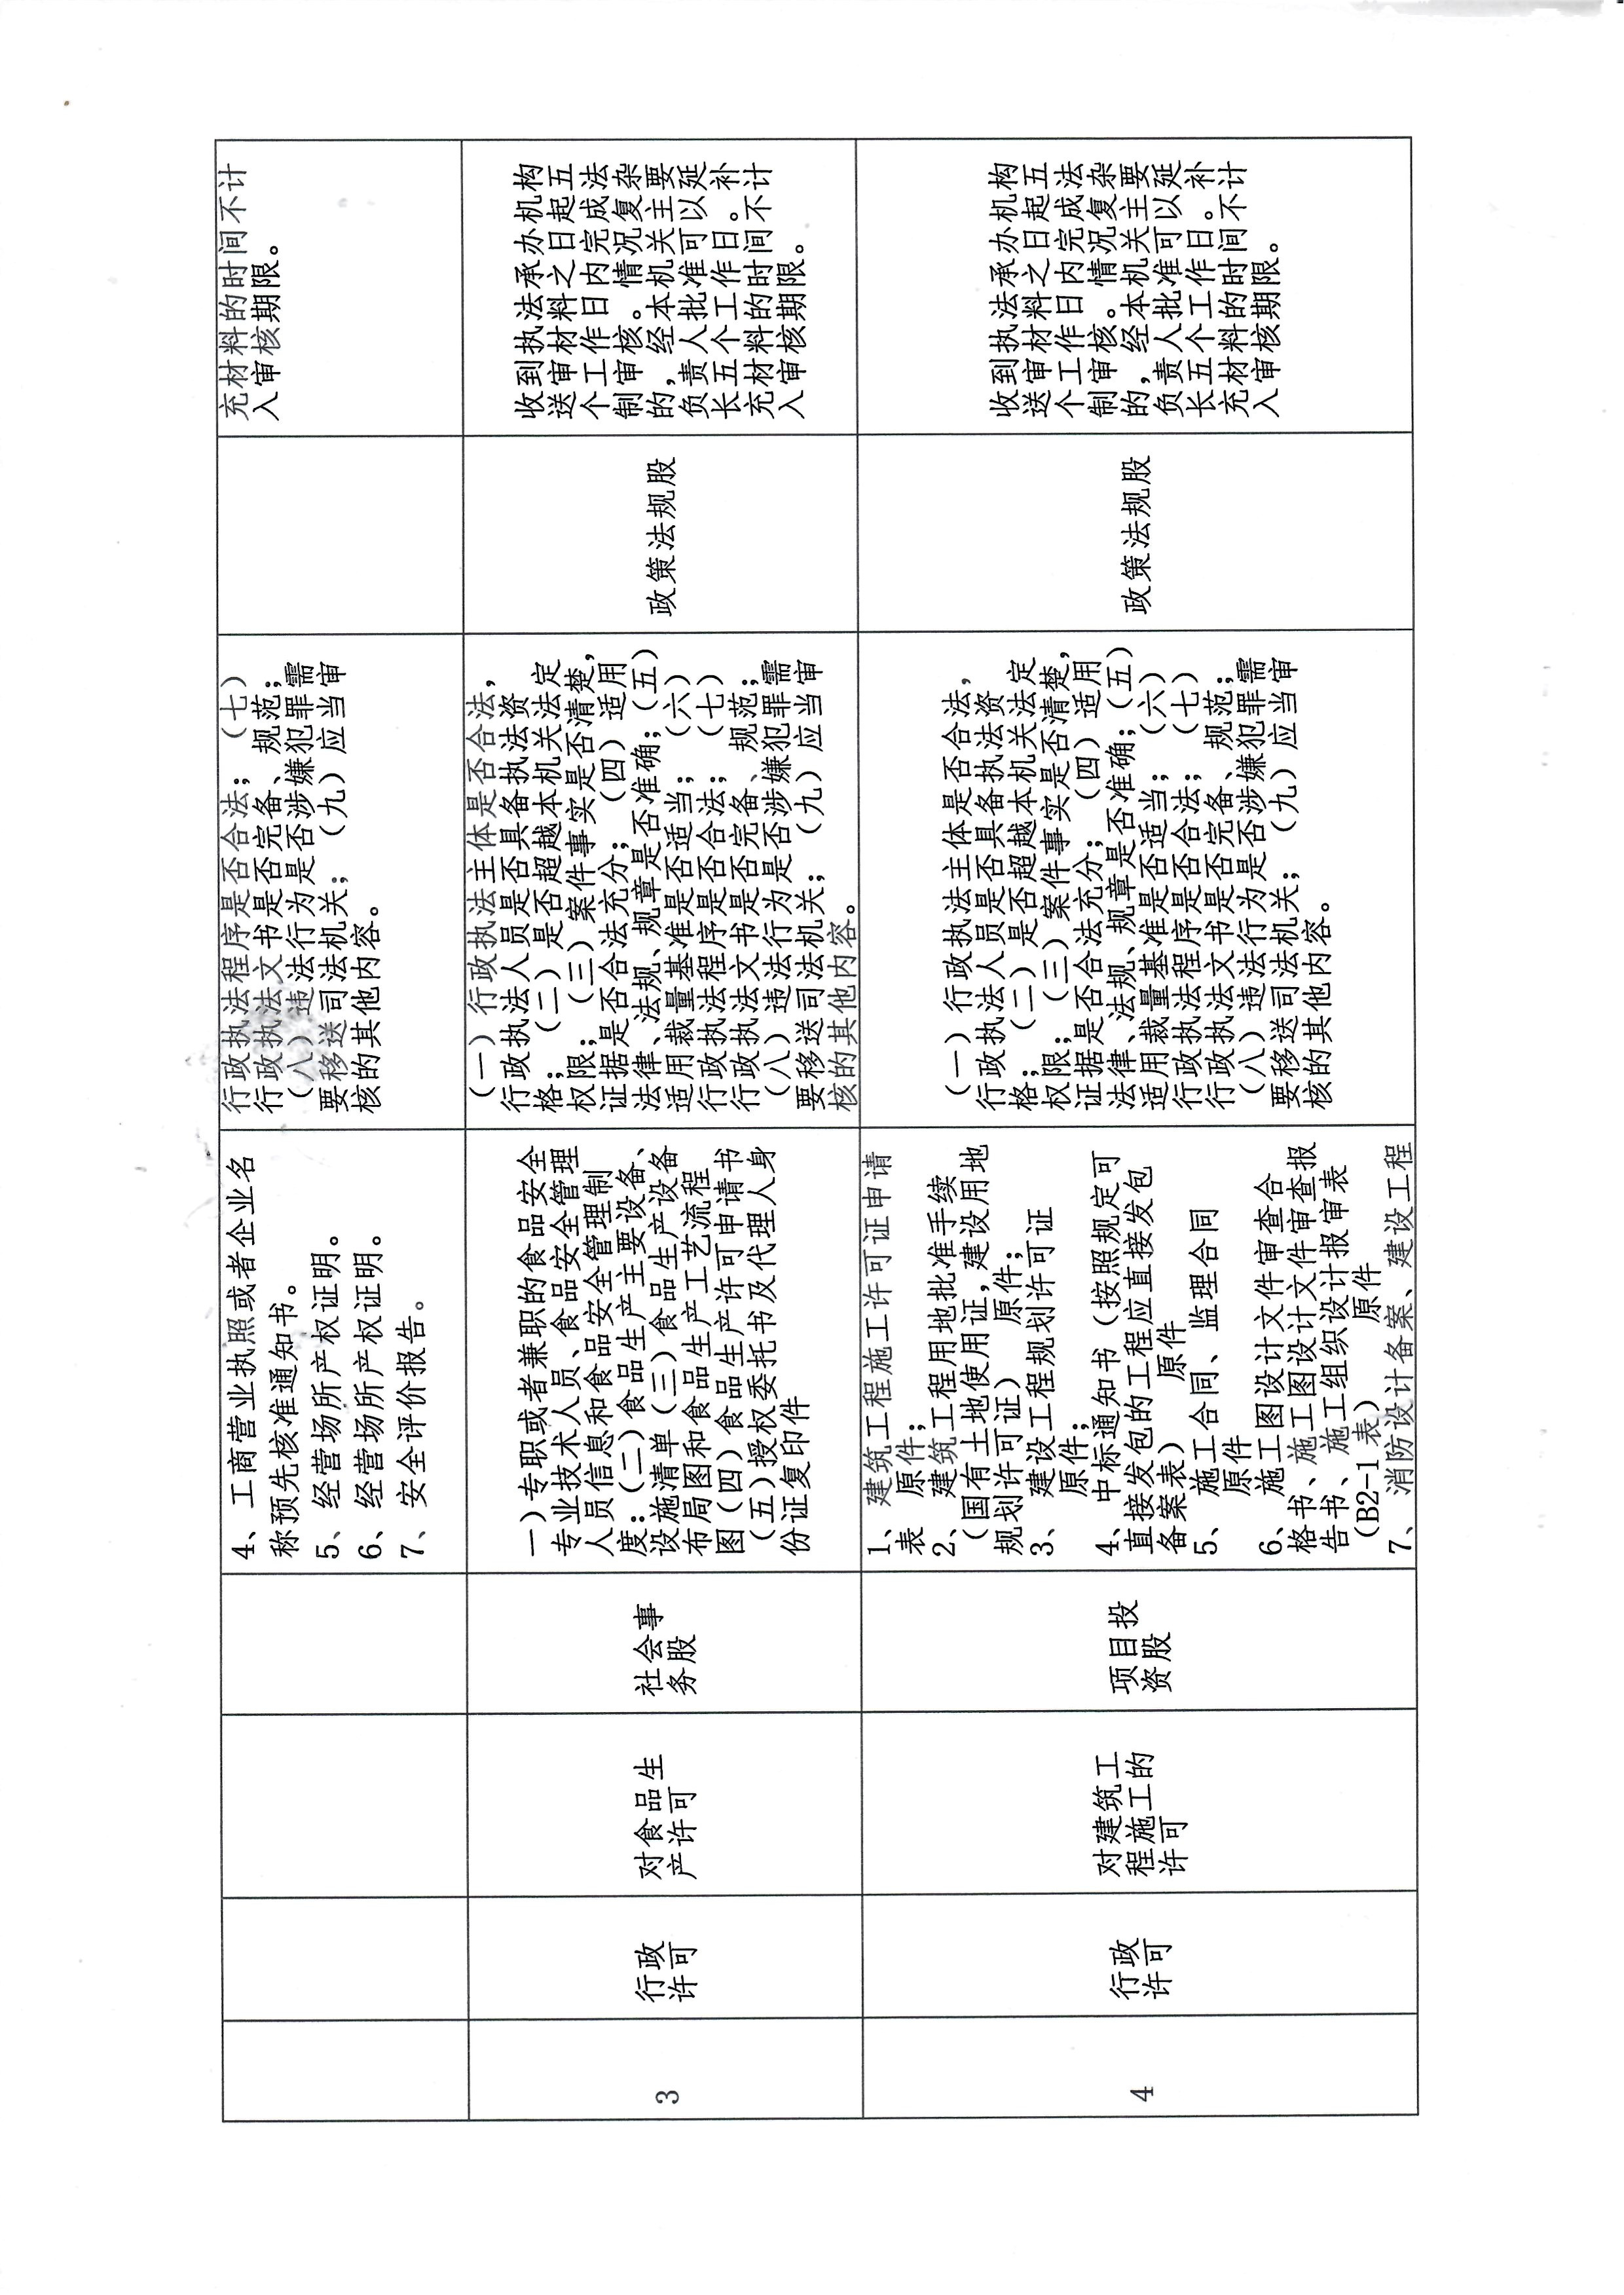 临西县行政审批局重大行政执法决定法制审核目录清单3.jpg